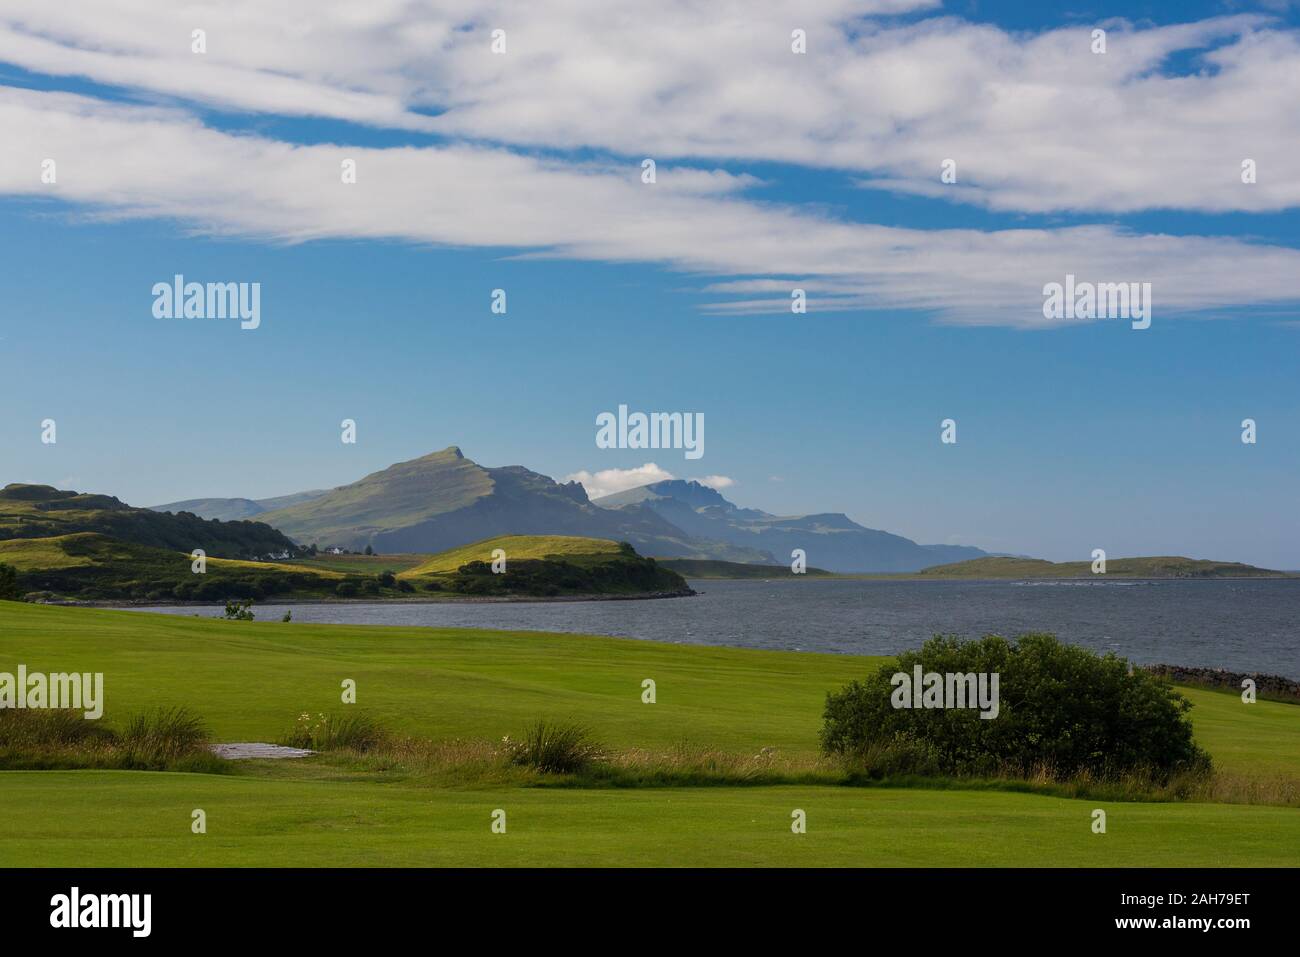 Paisaje tranquilo e icónico de la isla de Skye escocesa, con un prado verde en primer plano y montañas distantes en el fondo Foto de stock